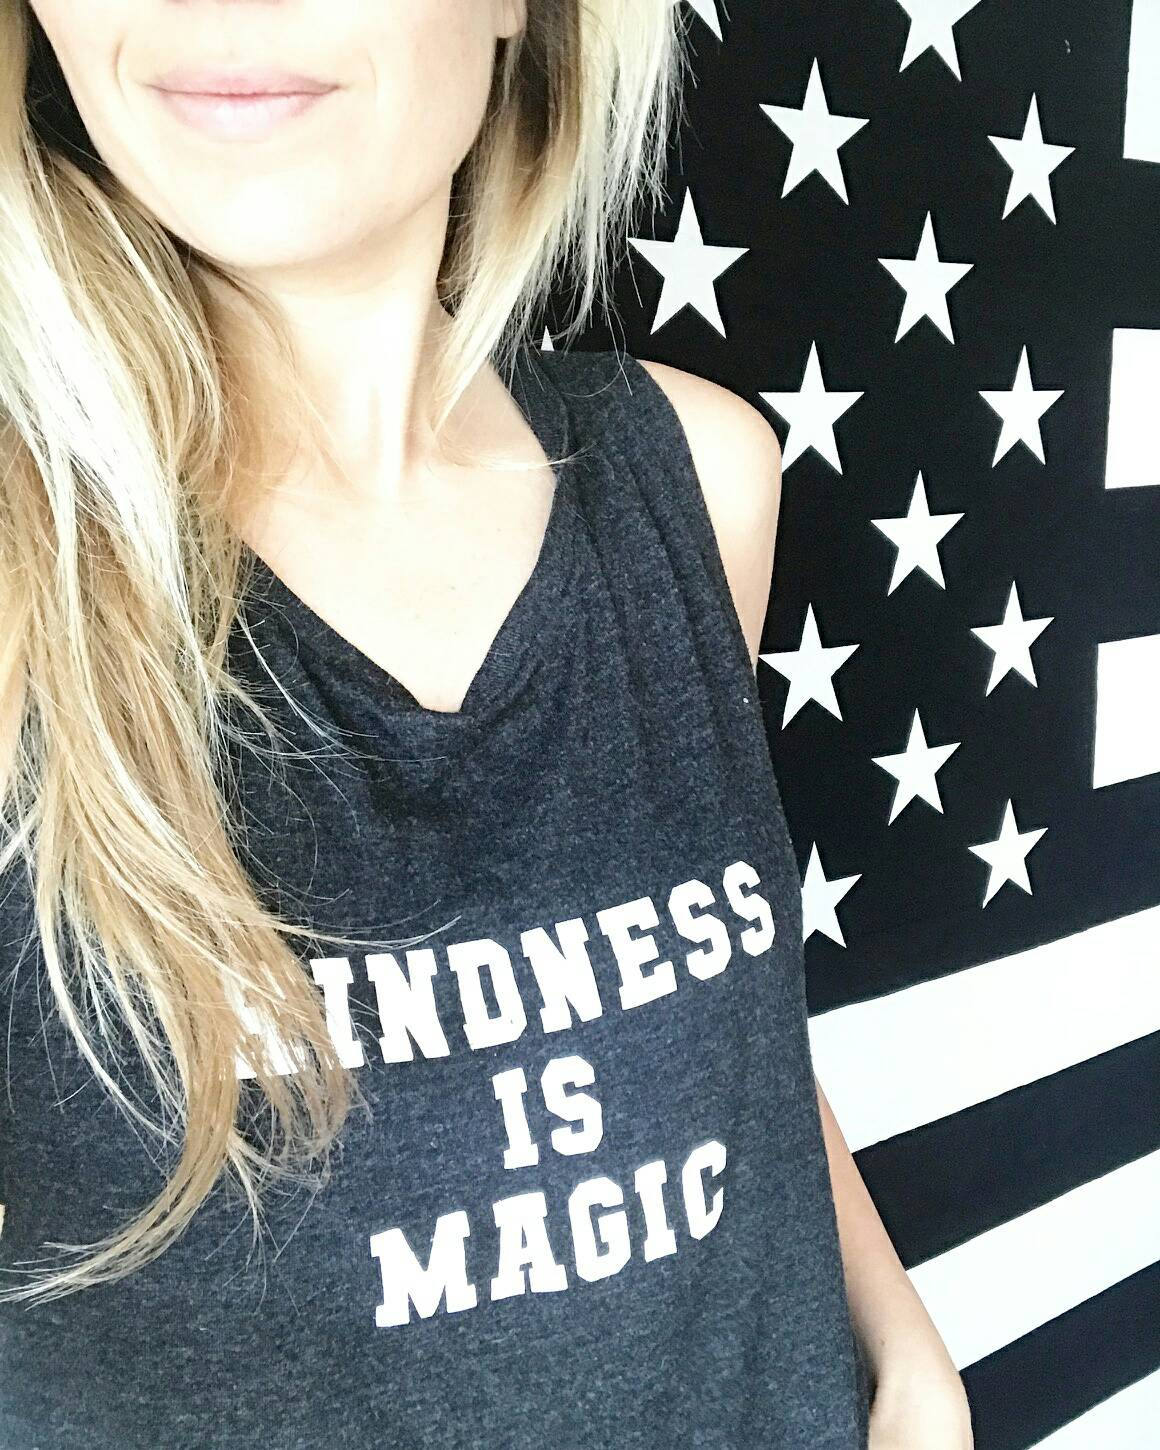 KINDNESS IS MAGIC, Kindness Tank Tops, Kindness Tank, Kindness Top, Kindness is Magic, Kind Tees, Kindness is Magic Tee, Kindness Shirt